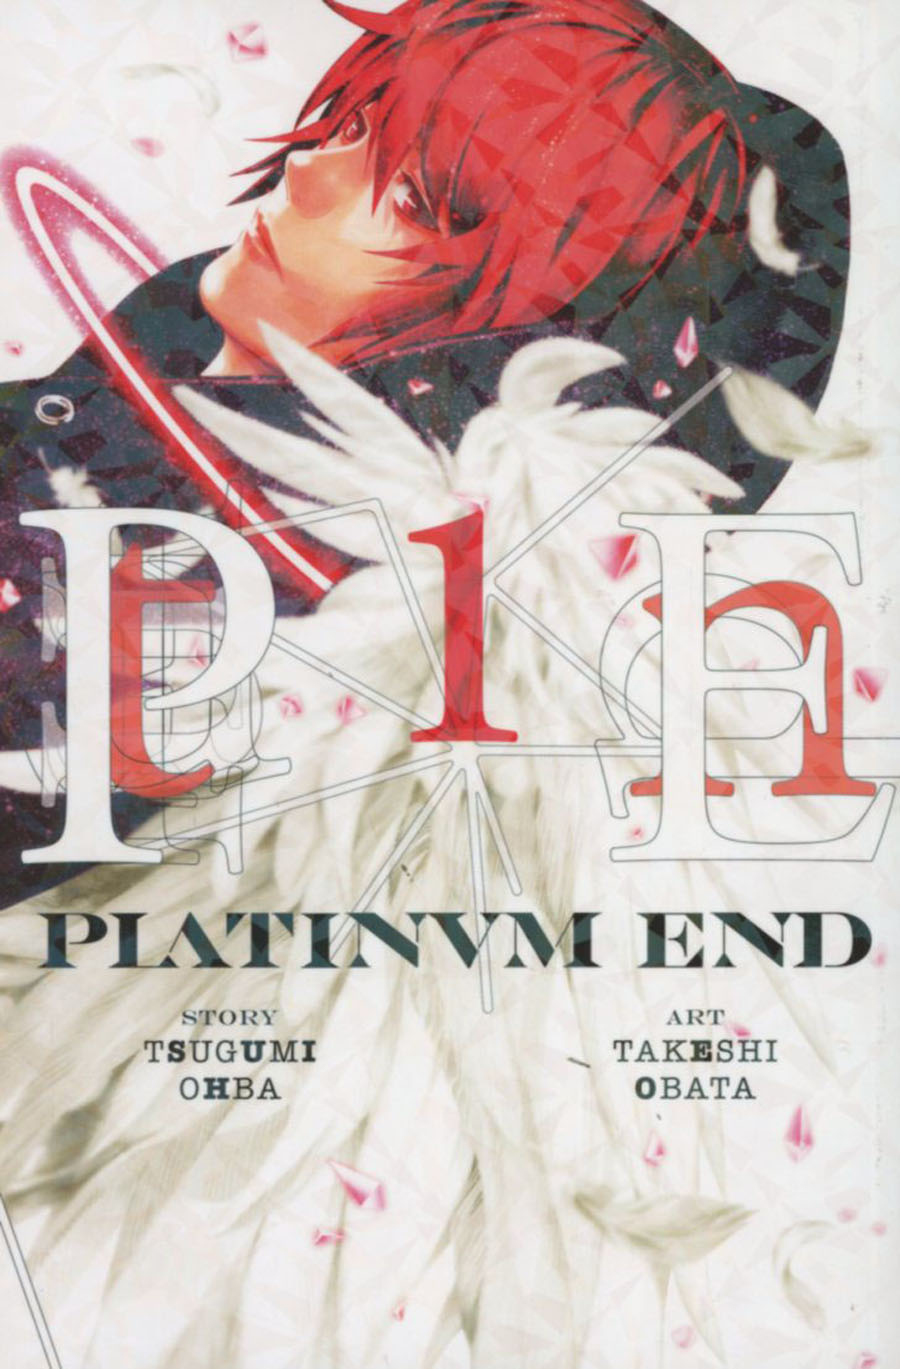 Platinum End Vol 1 GN